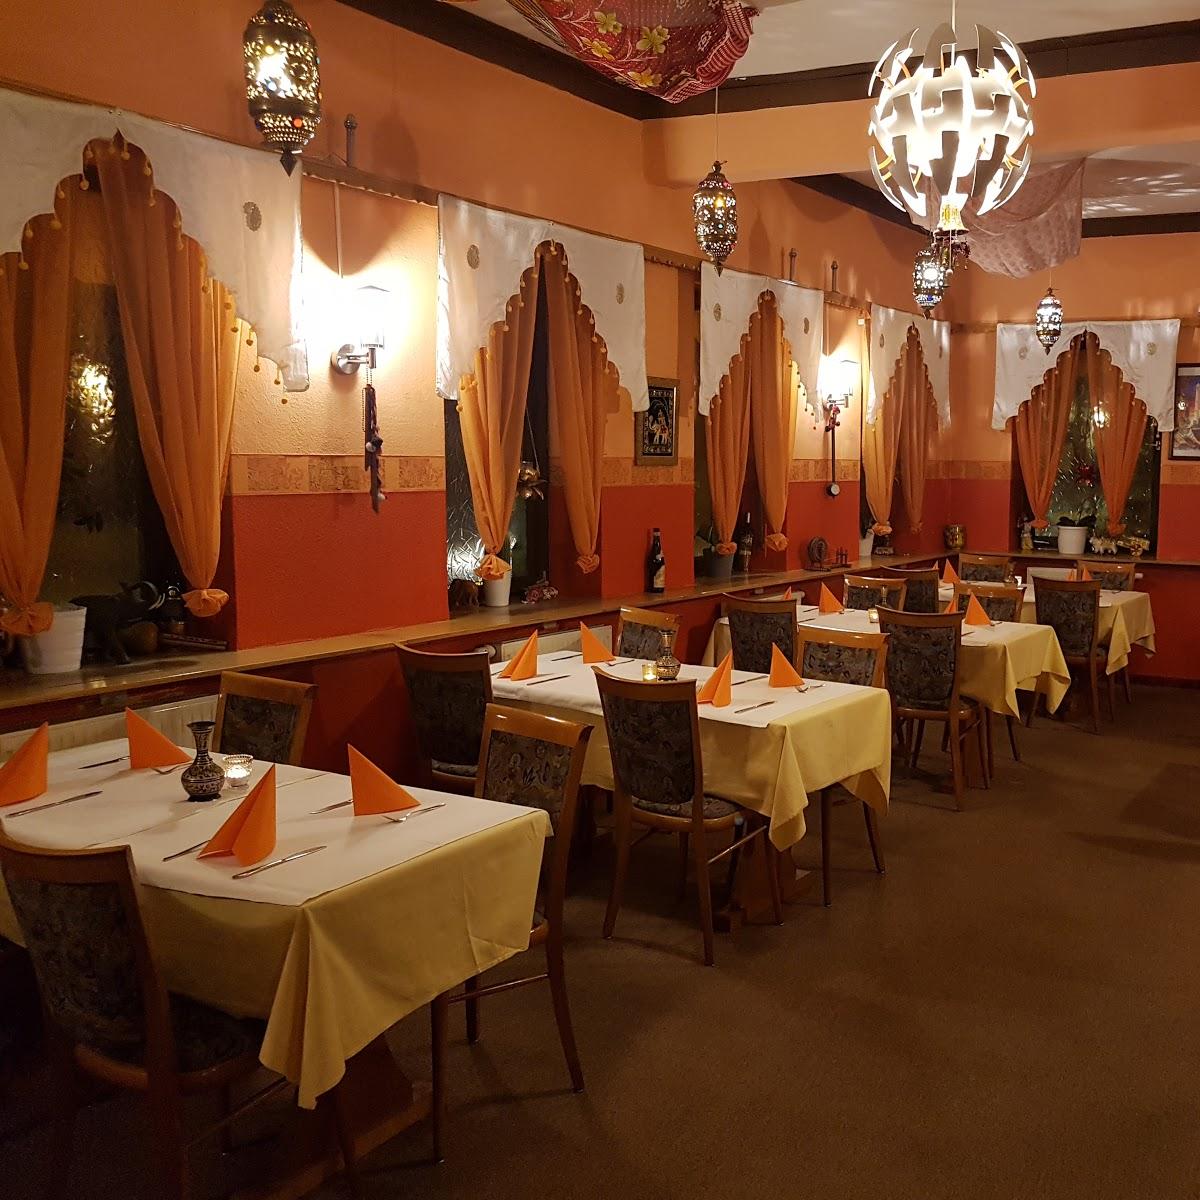 Restaurant "Punjabi House" in Fürth